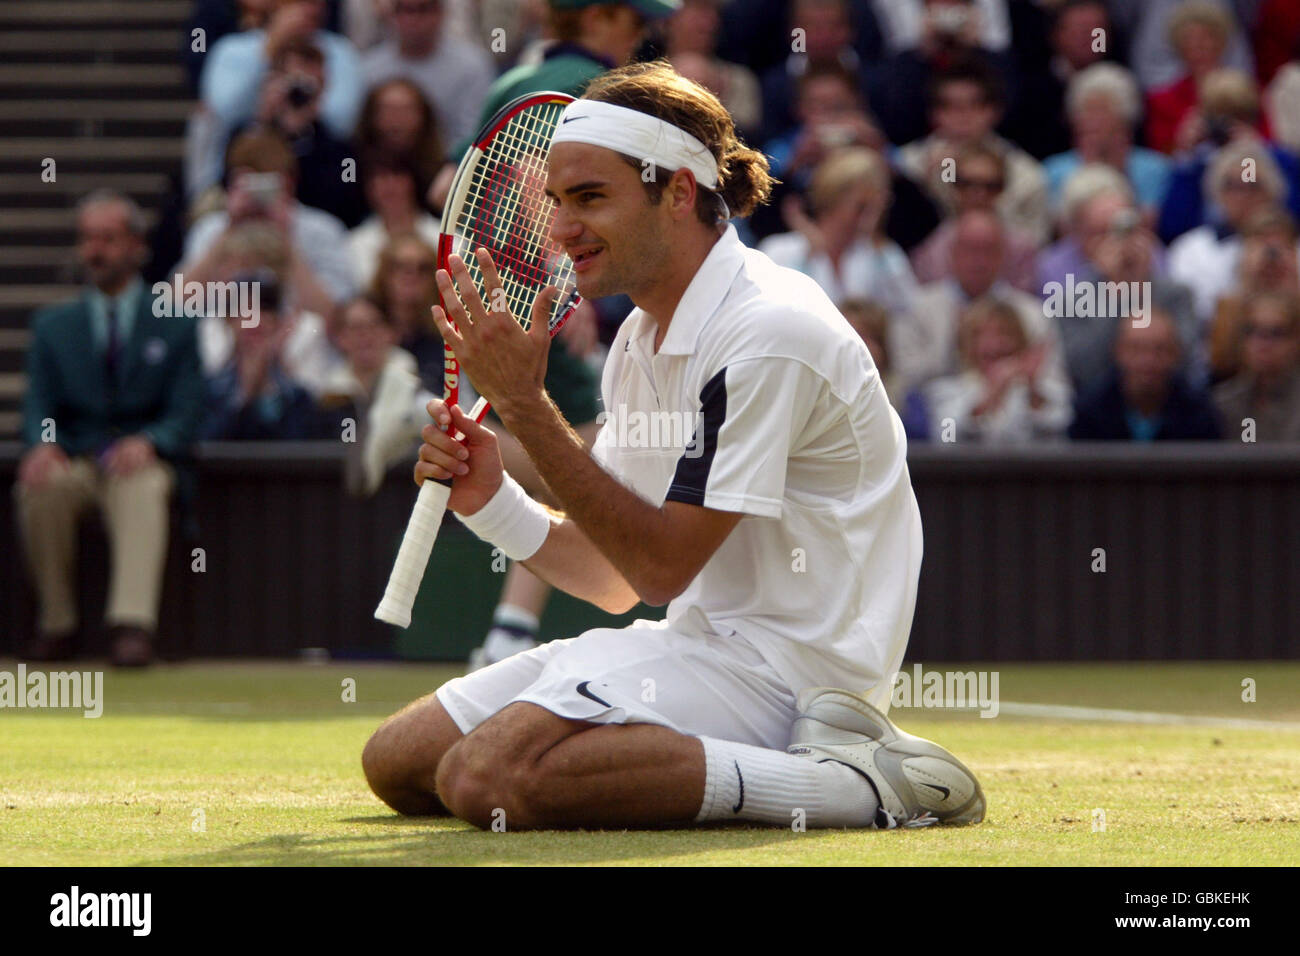 Tennis - Wimbledon 2004 - Men's Final - Roger Federer v Andy Roddick. Roger  Federer celebrates winning Stock Photo - Alamy